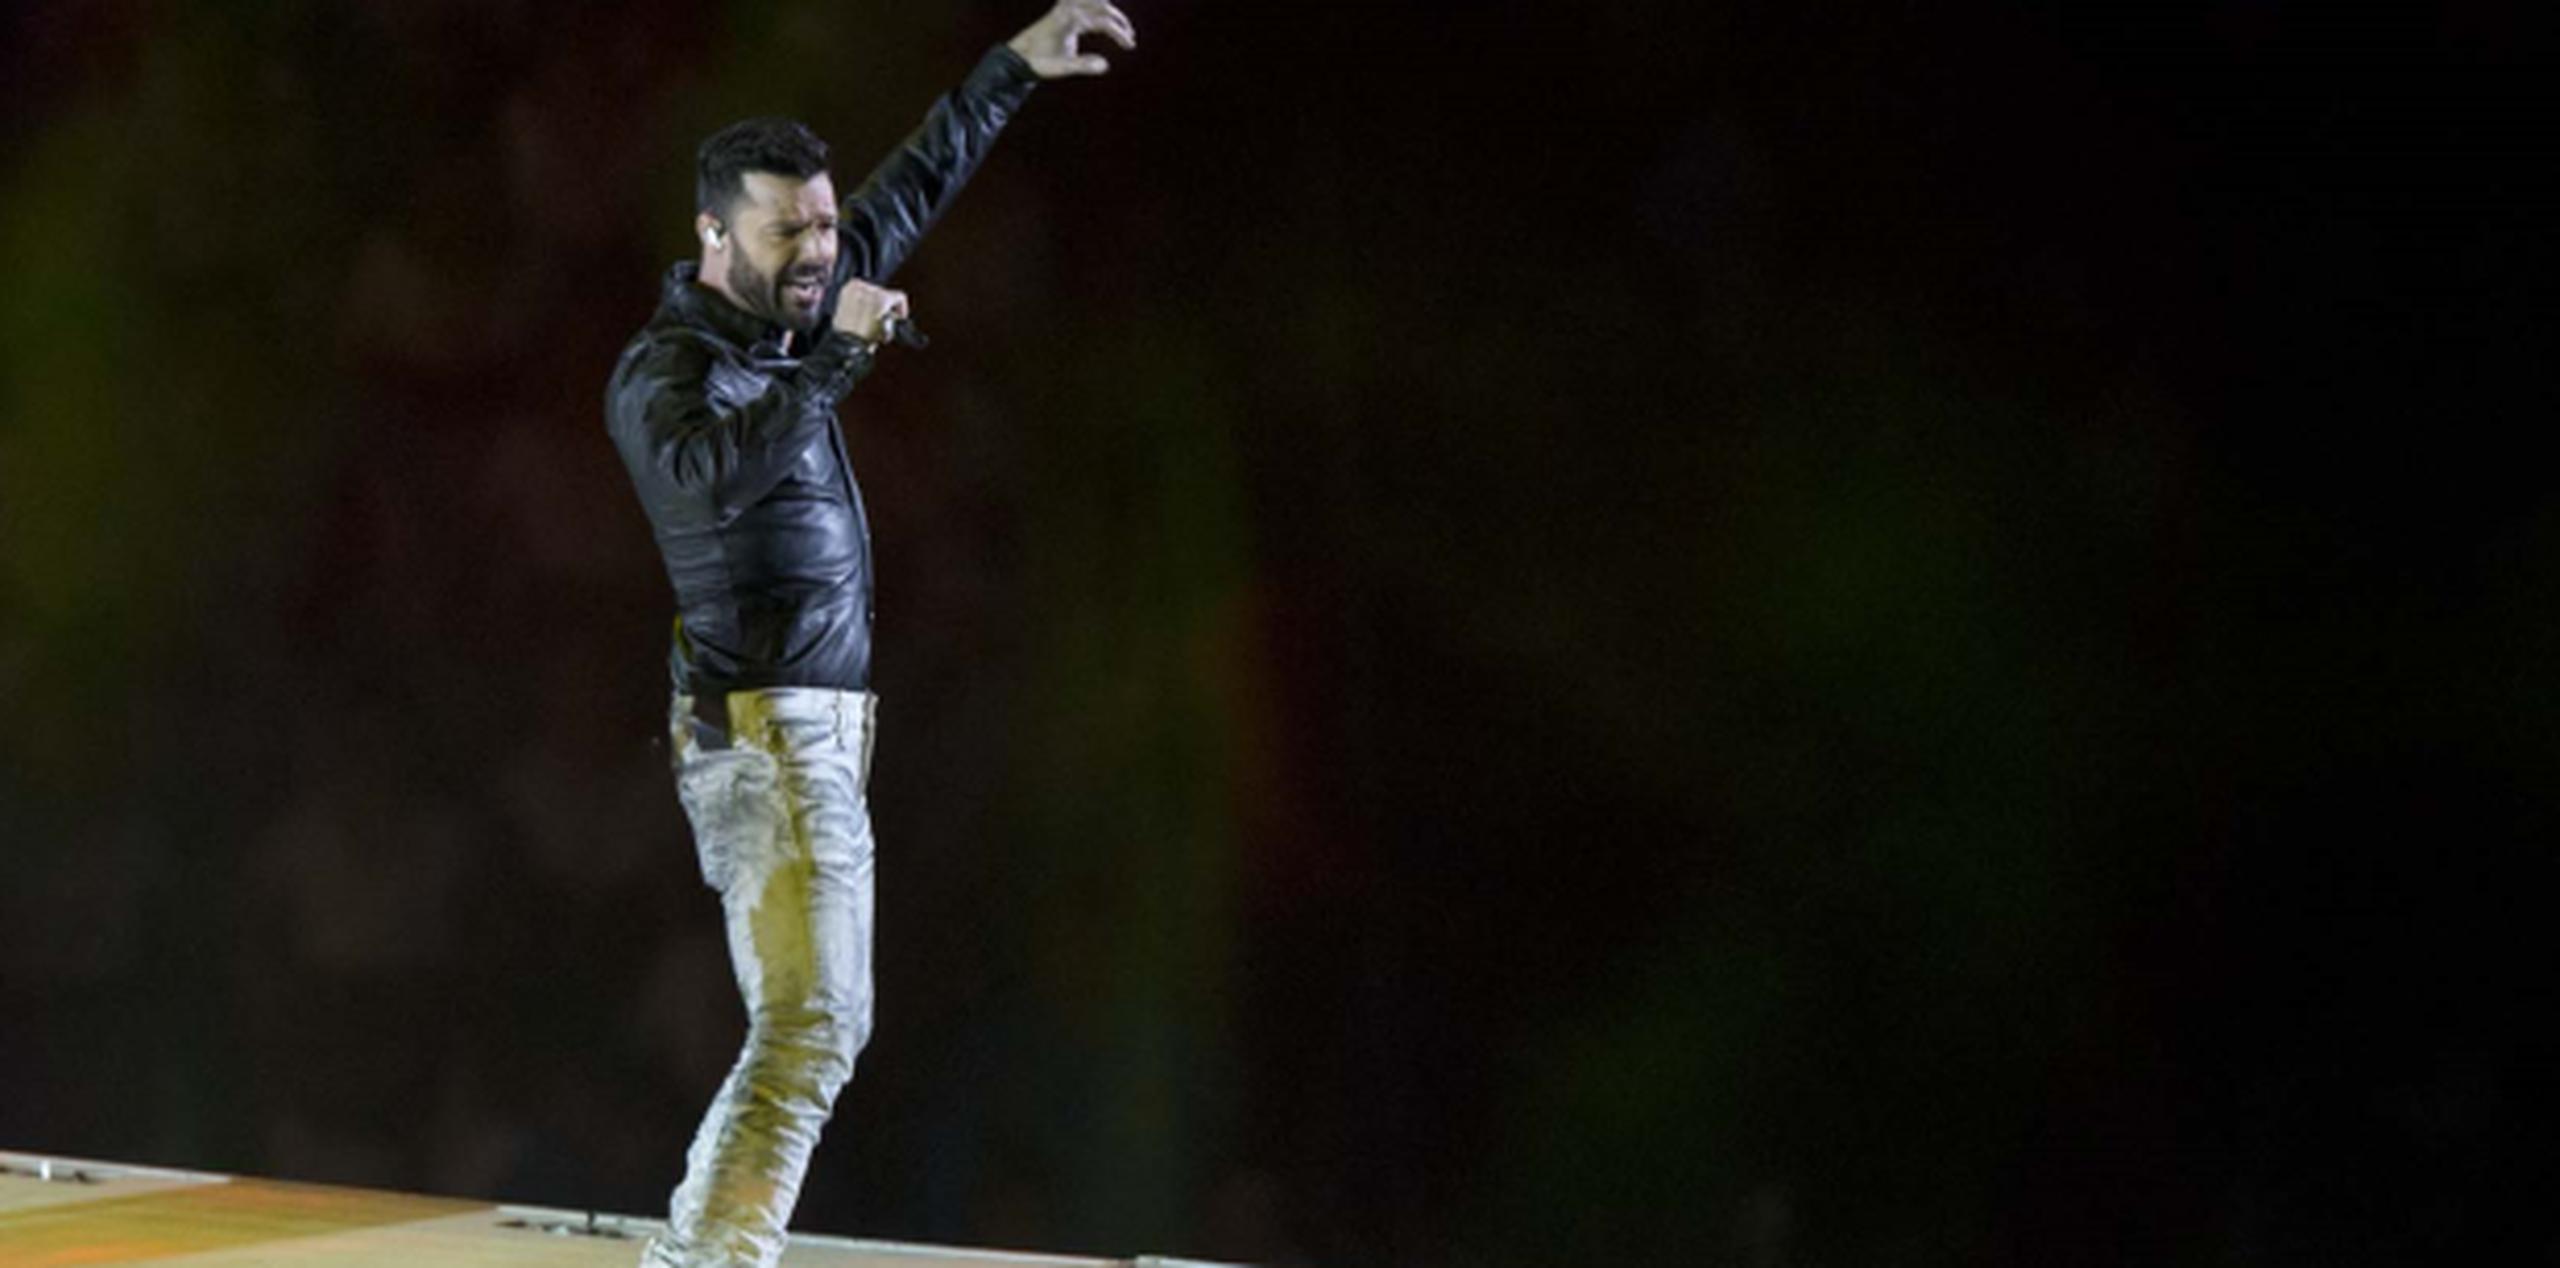 Ricky Martin ofreció el concierto final de la noche, una presentación que enloqueció a las más de 23,000 almas que llenaron el estadio Luis "Pirata" Fuente de esta ciudad portuaria. (tonito.zayas@gfrmedia.com)